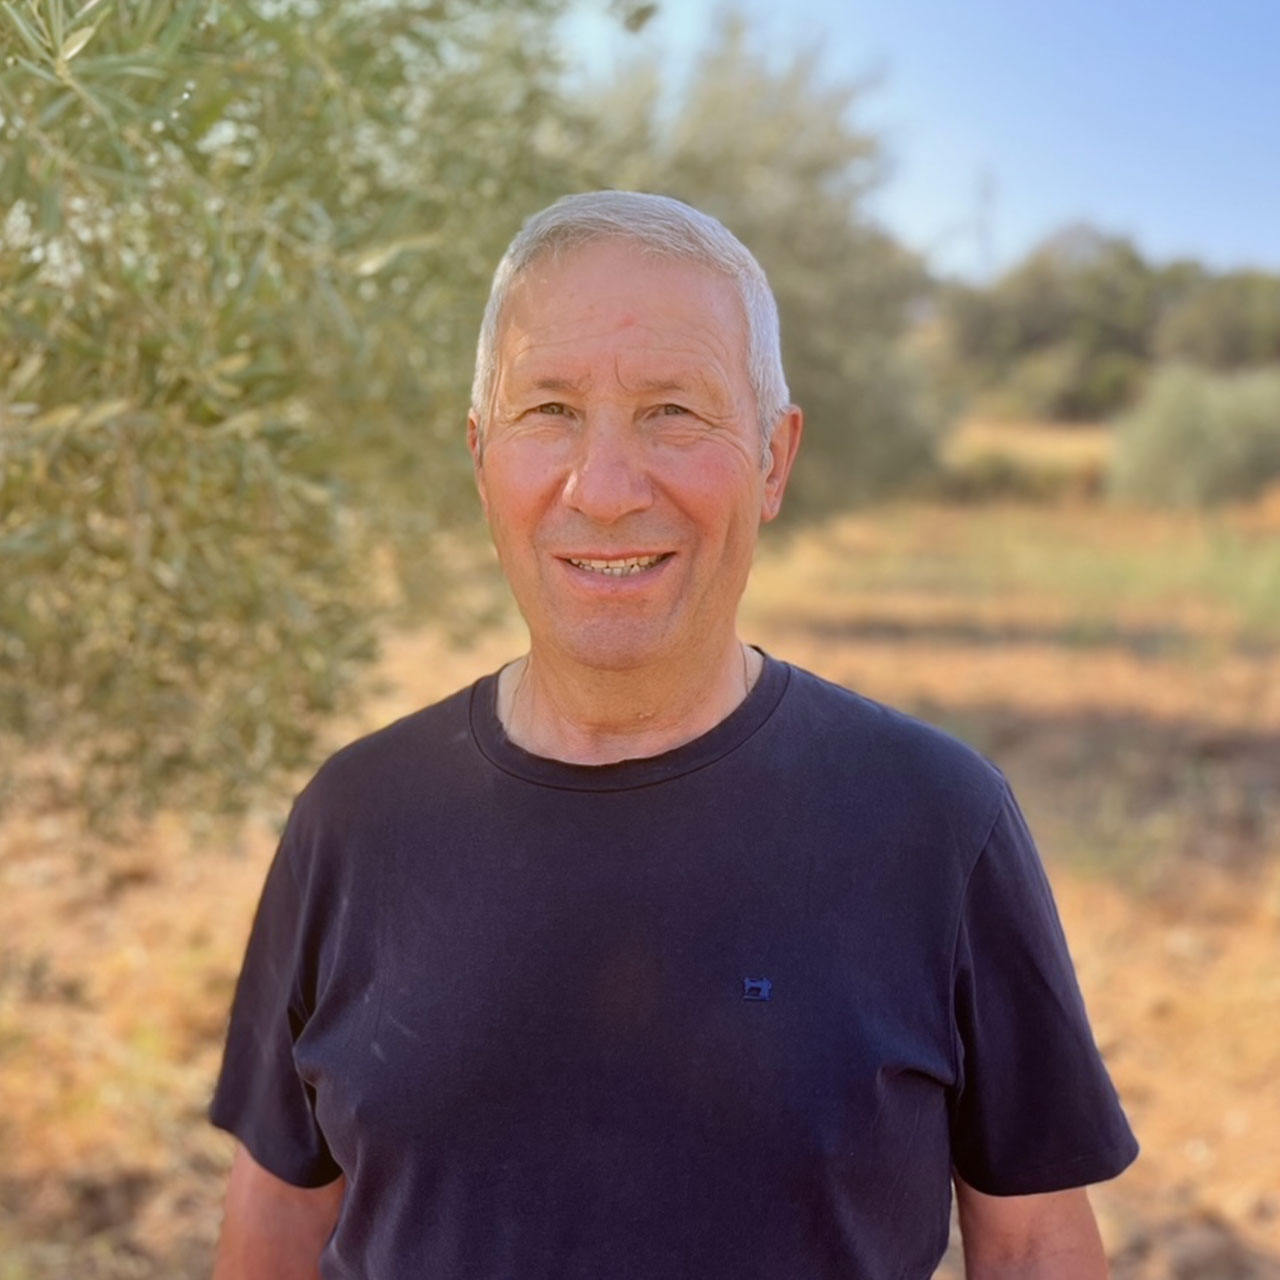 Ein Portraitfoto von Manuel, aufgenommen vor einem Olivenbaum in Portugal.